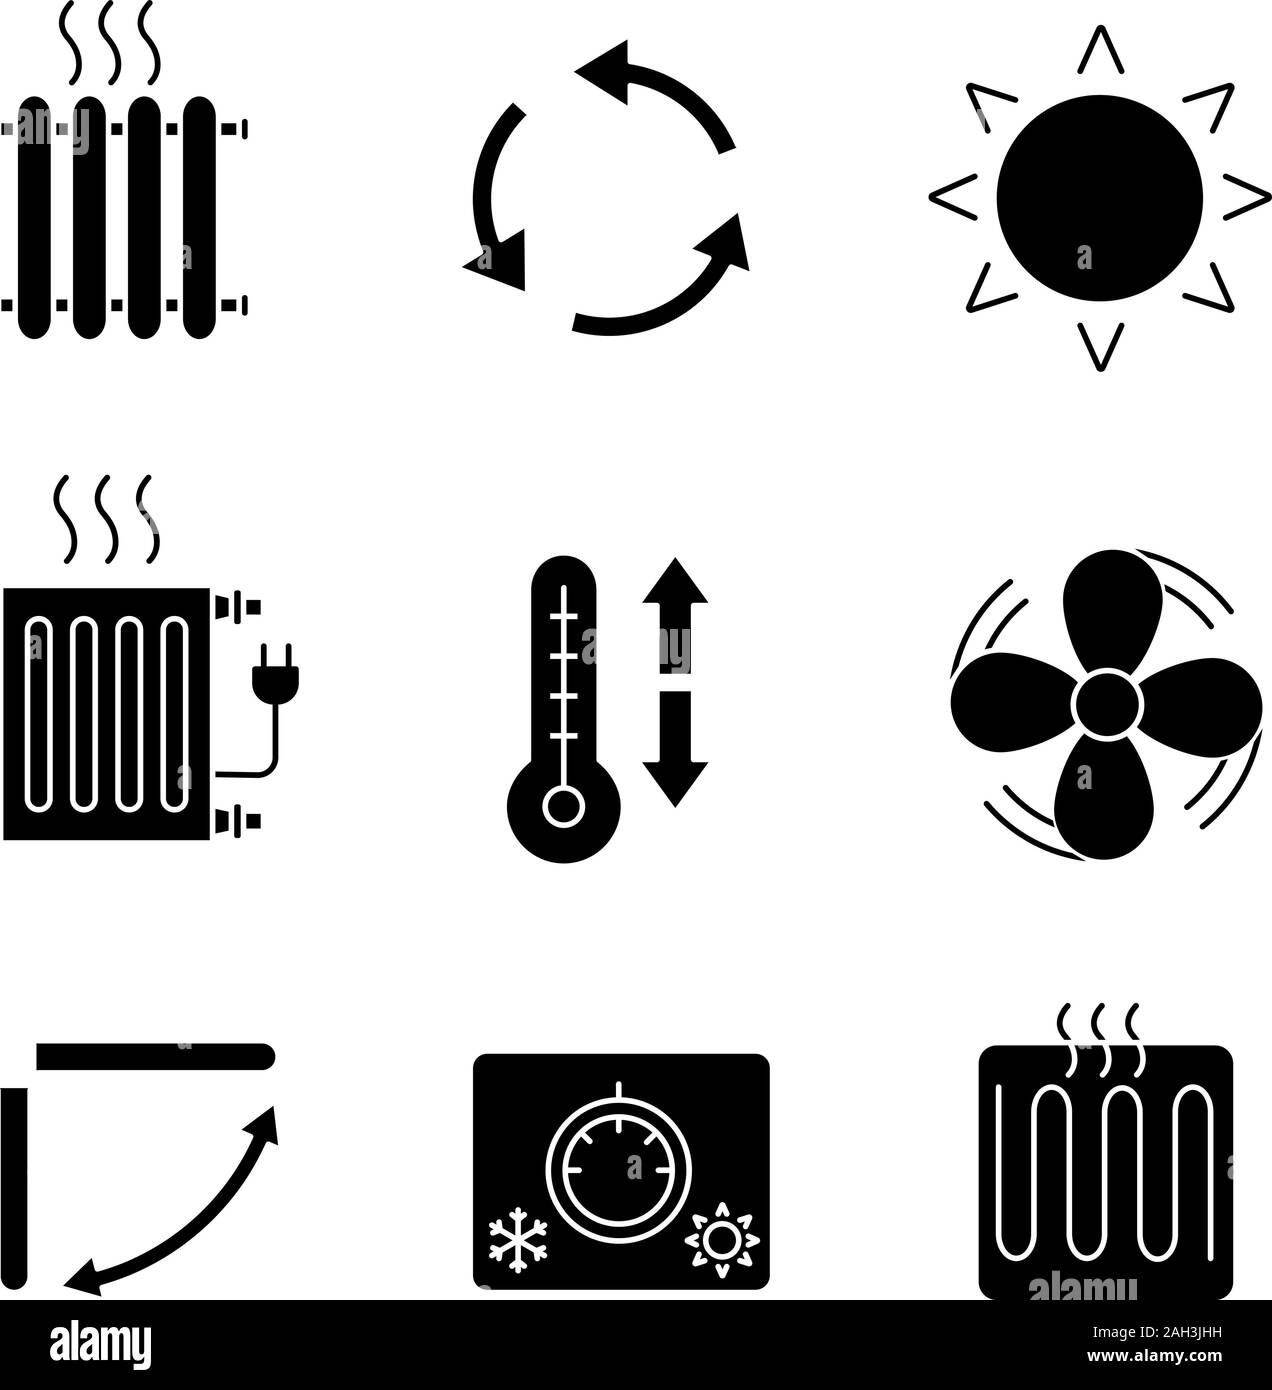 Climatisation glyphe icons set. Radiateurs, ventilation, soleil,  climatisation réglable, ventilateur d'échappement, revitalisant louvre,  thermostat, élément de chauffage. Silhouet Image Vectorielle Stock - Alamy